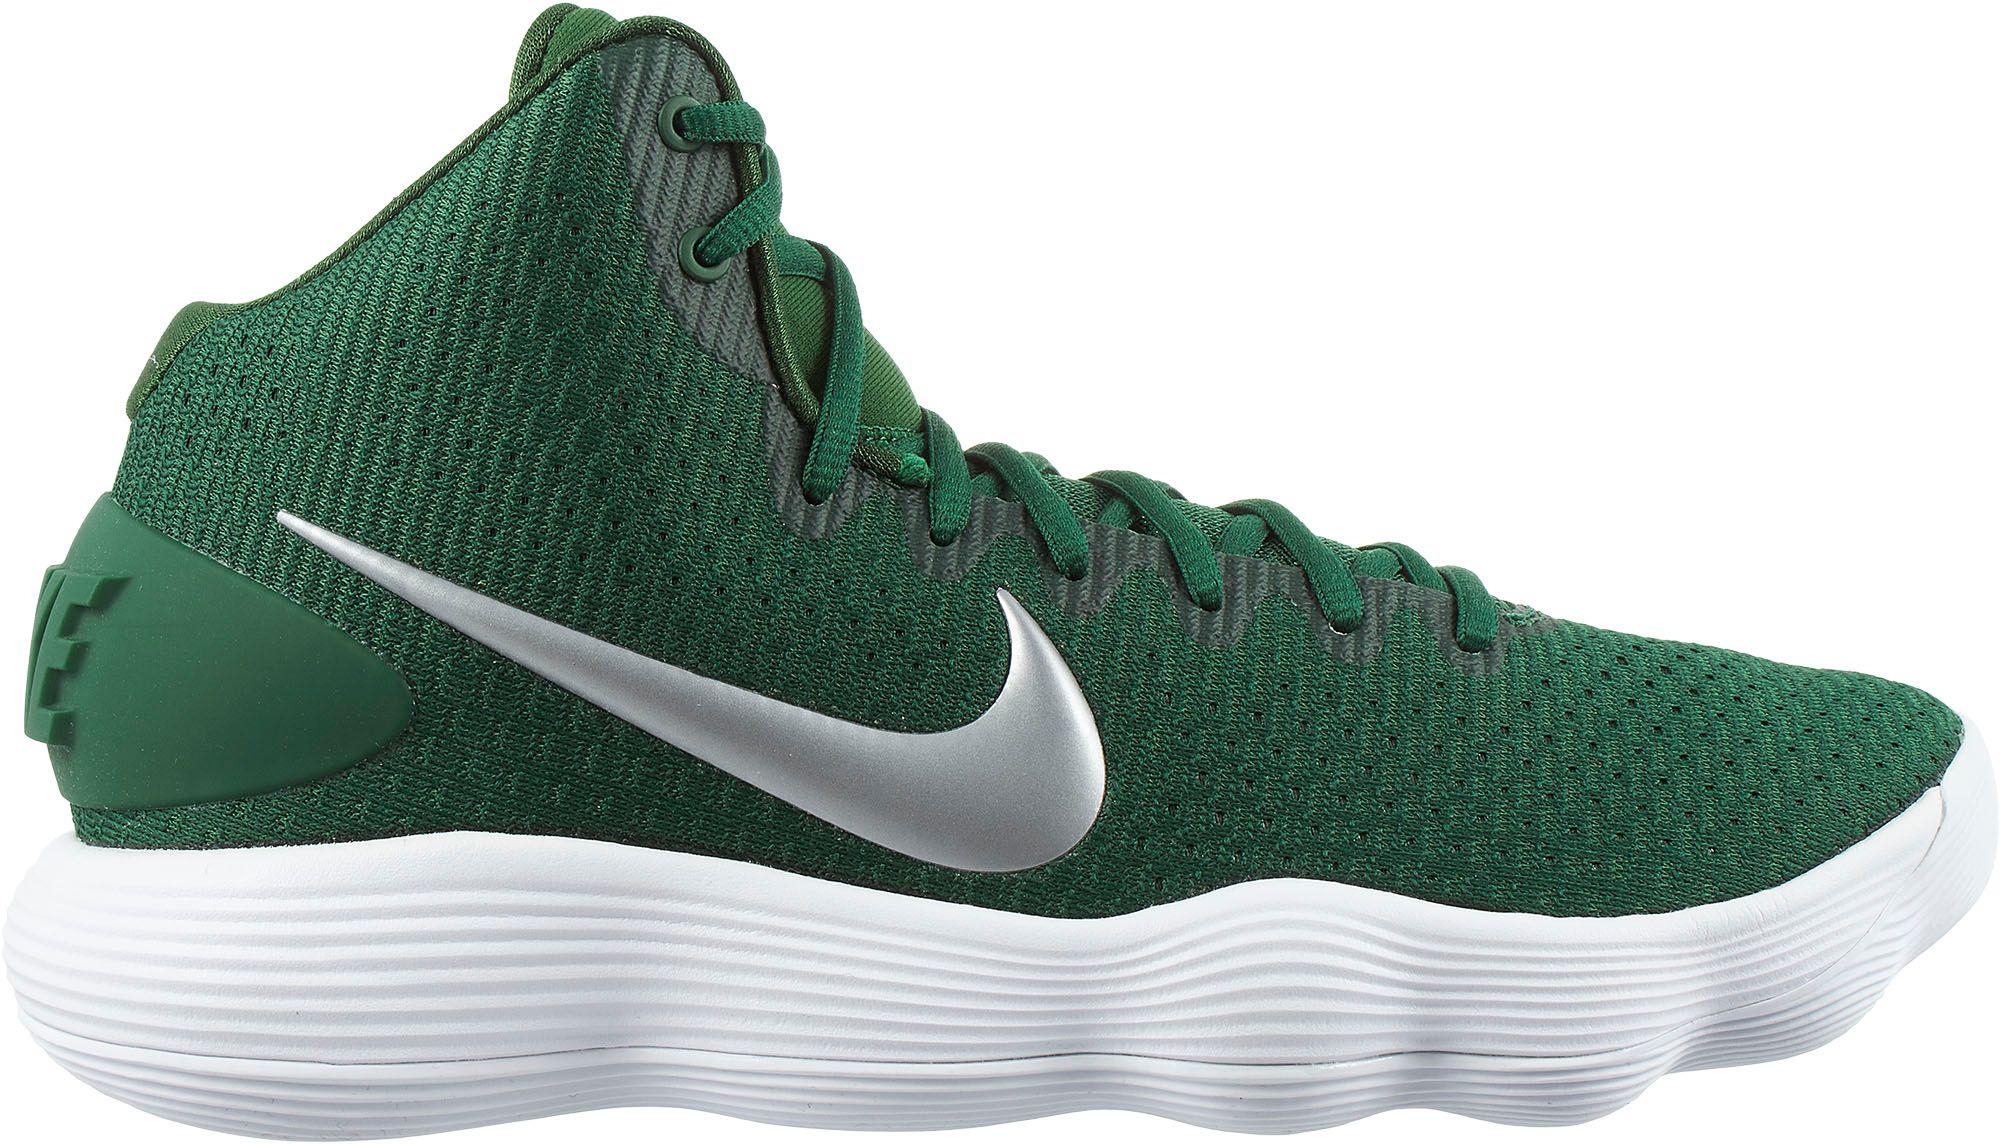 Hyperdunk Tb 2017 Green Basketball Shoe 